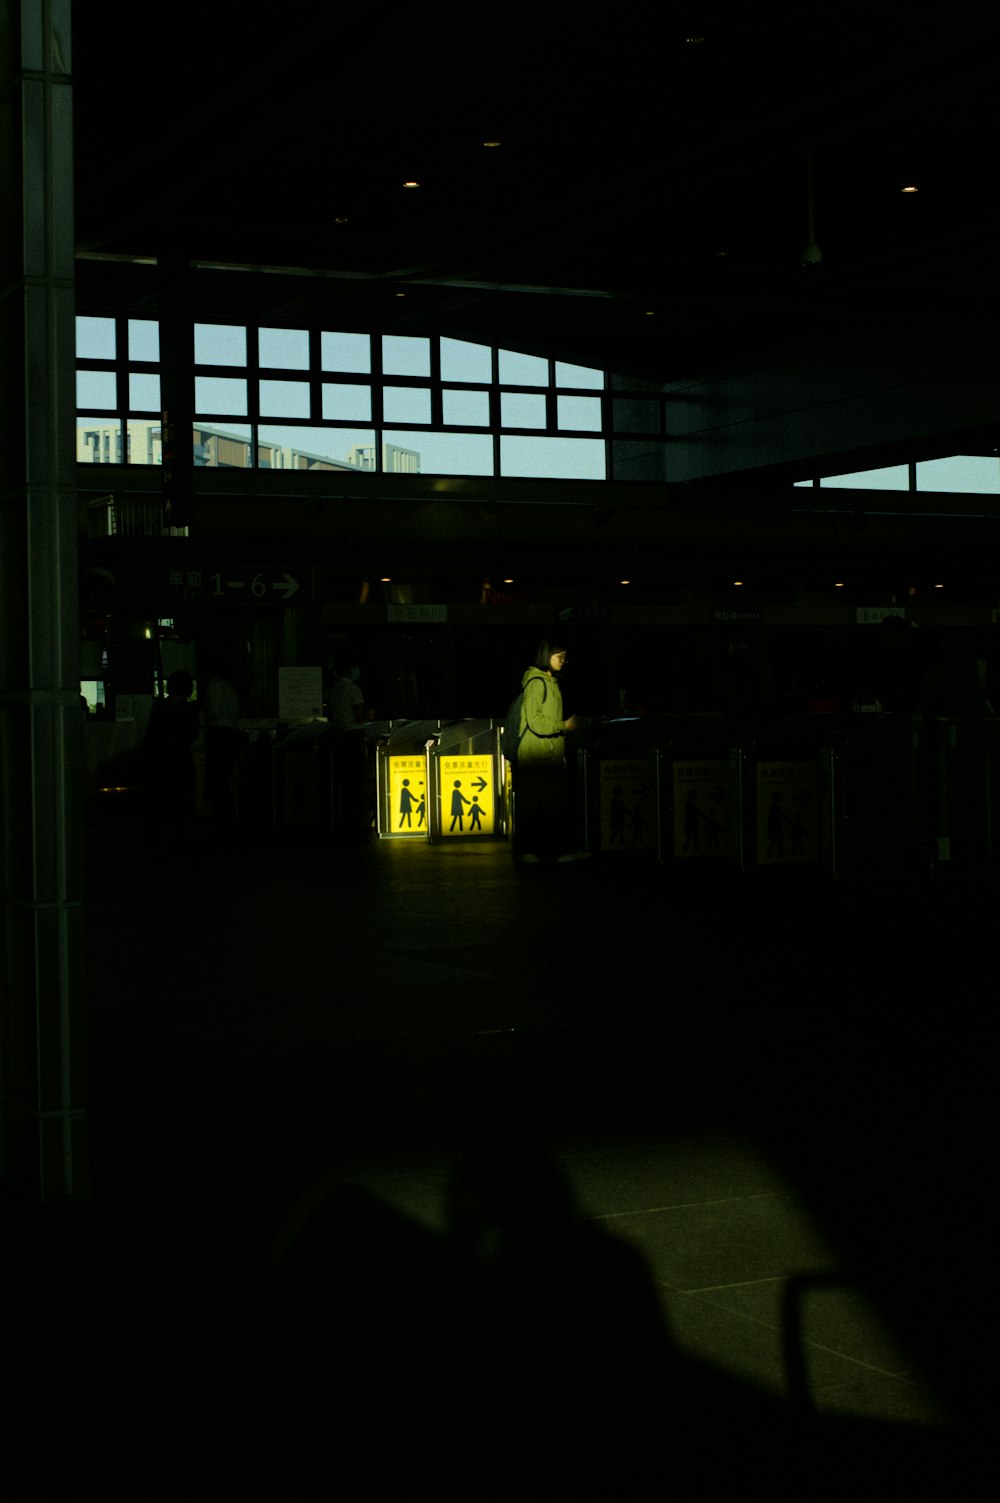 Ein Mann steht neben einer gelben Kiste in einem dunklen Raum